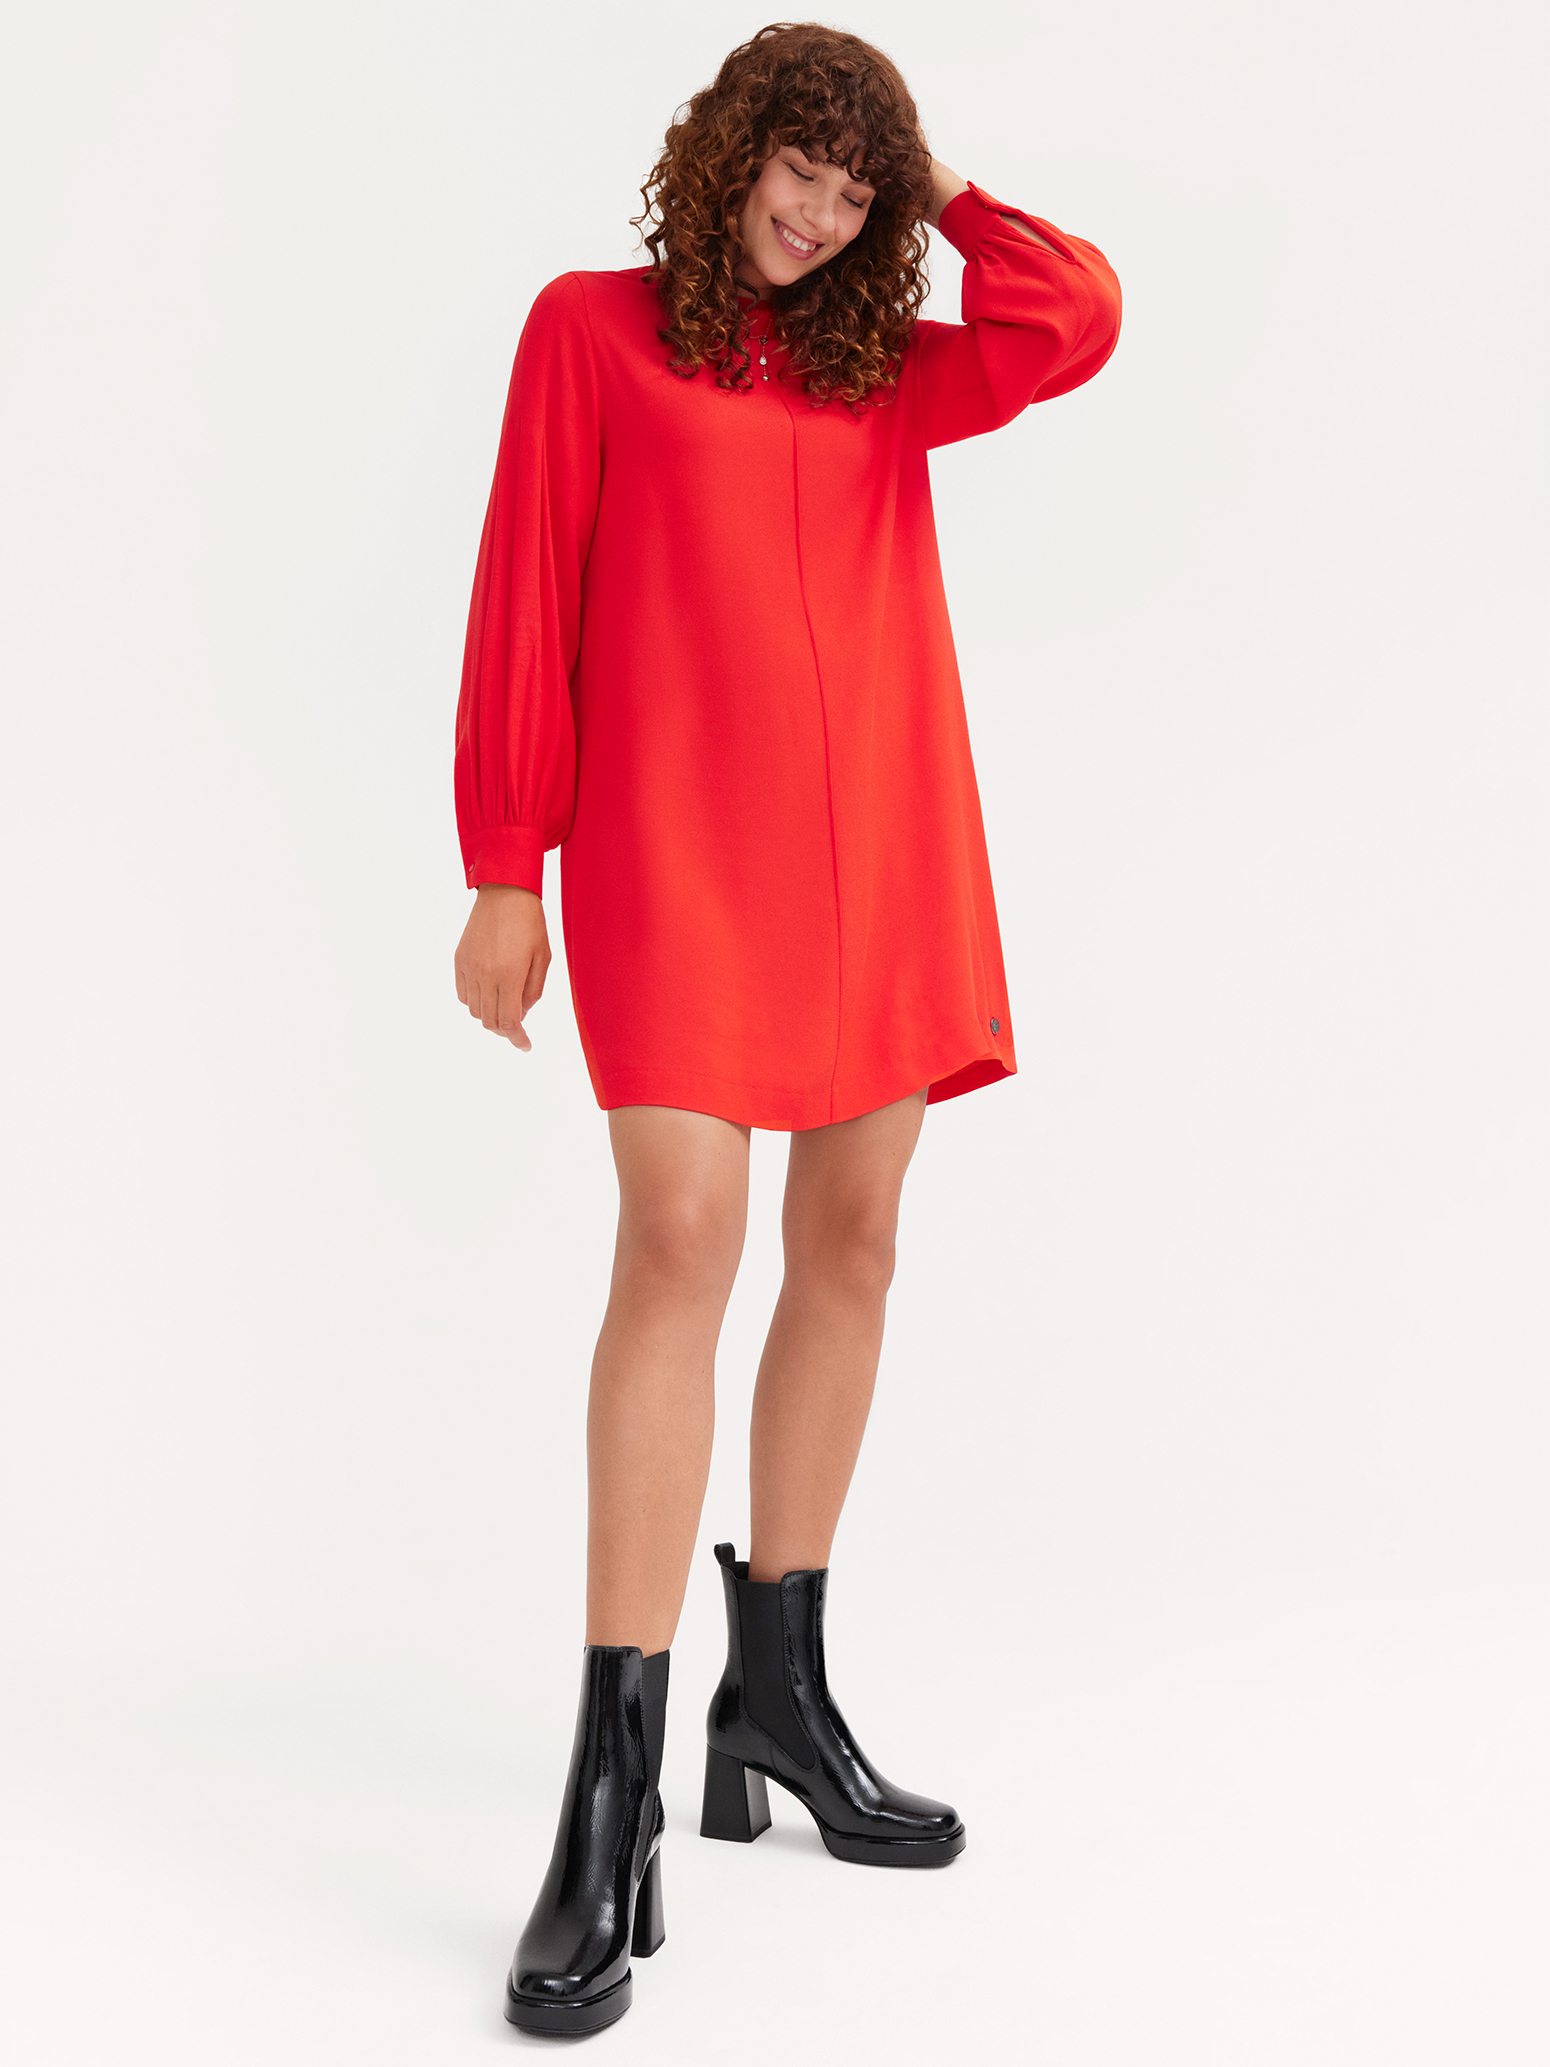 Kleid - rot TAW0356-30042: Tamaris Kleider online kaufen!